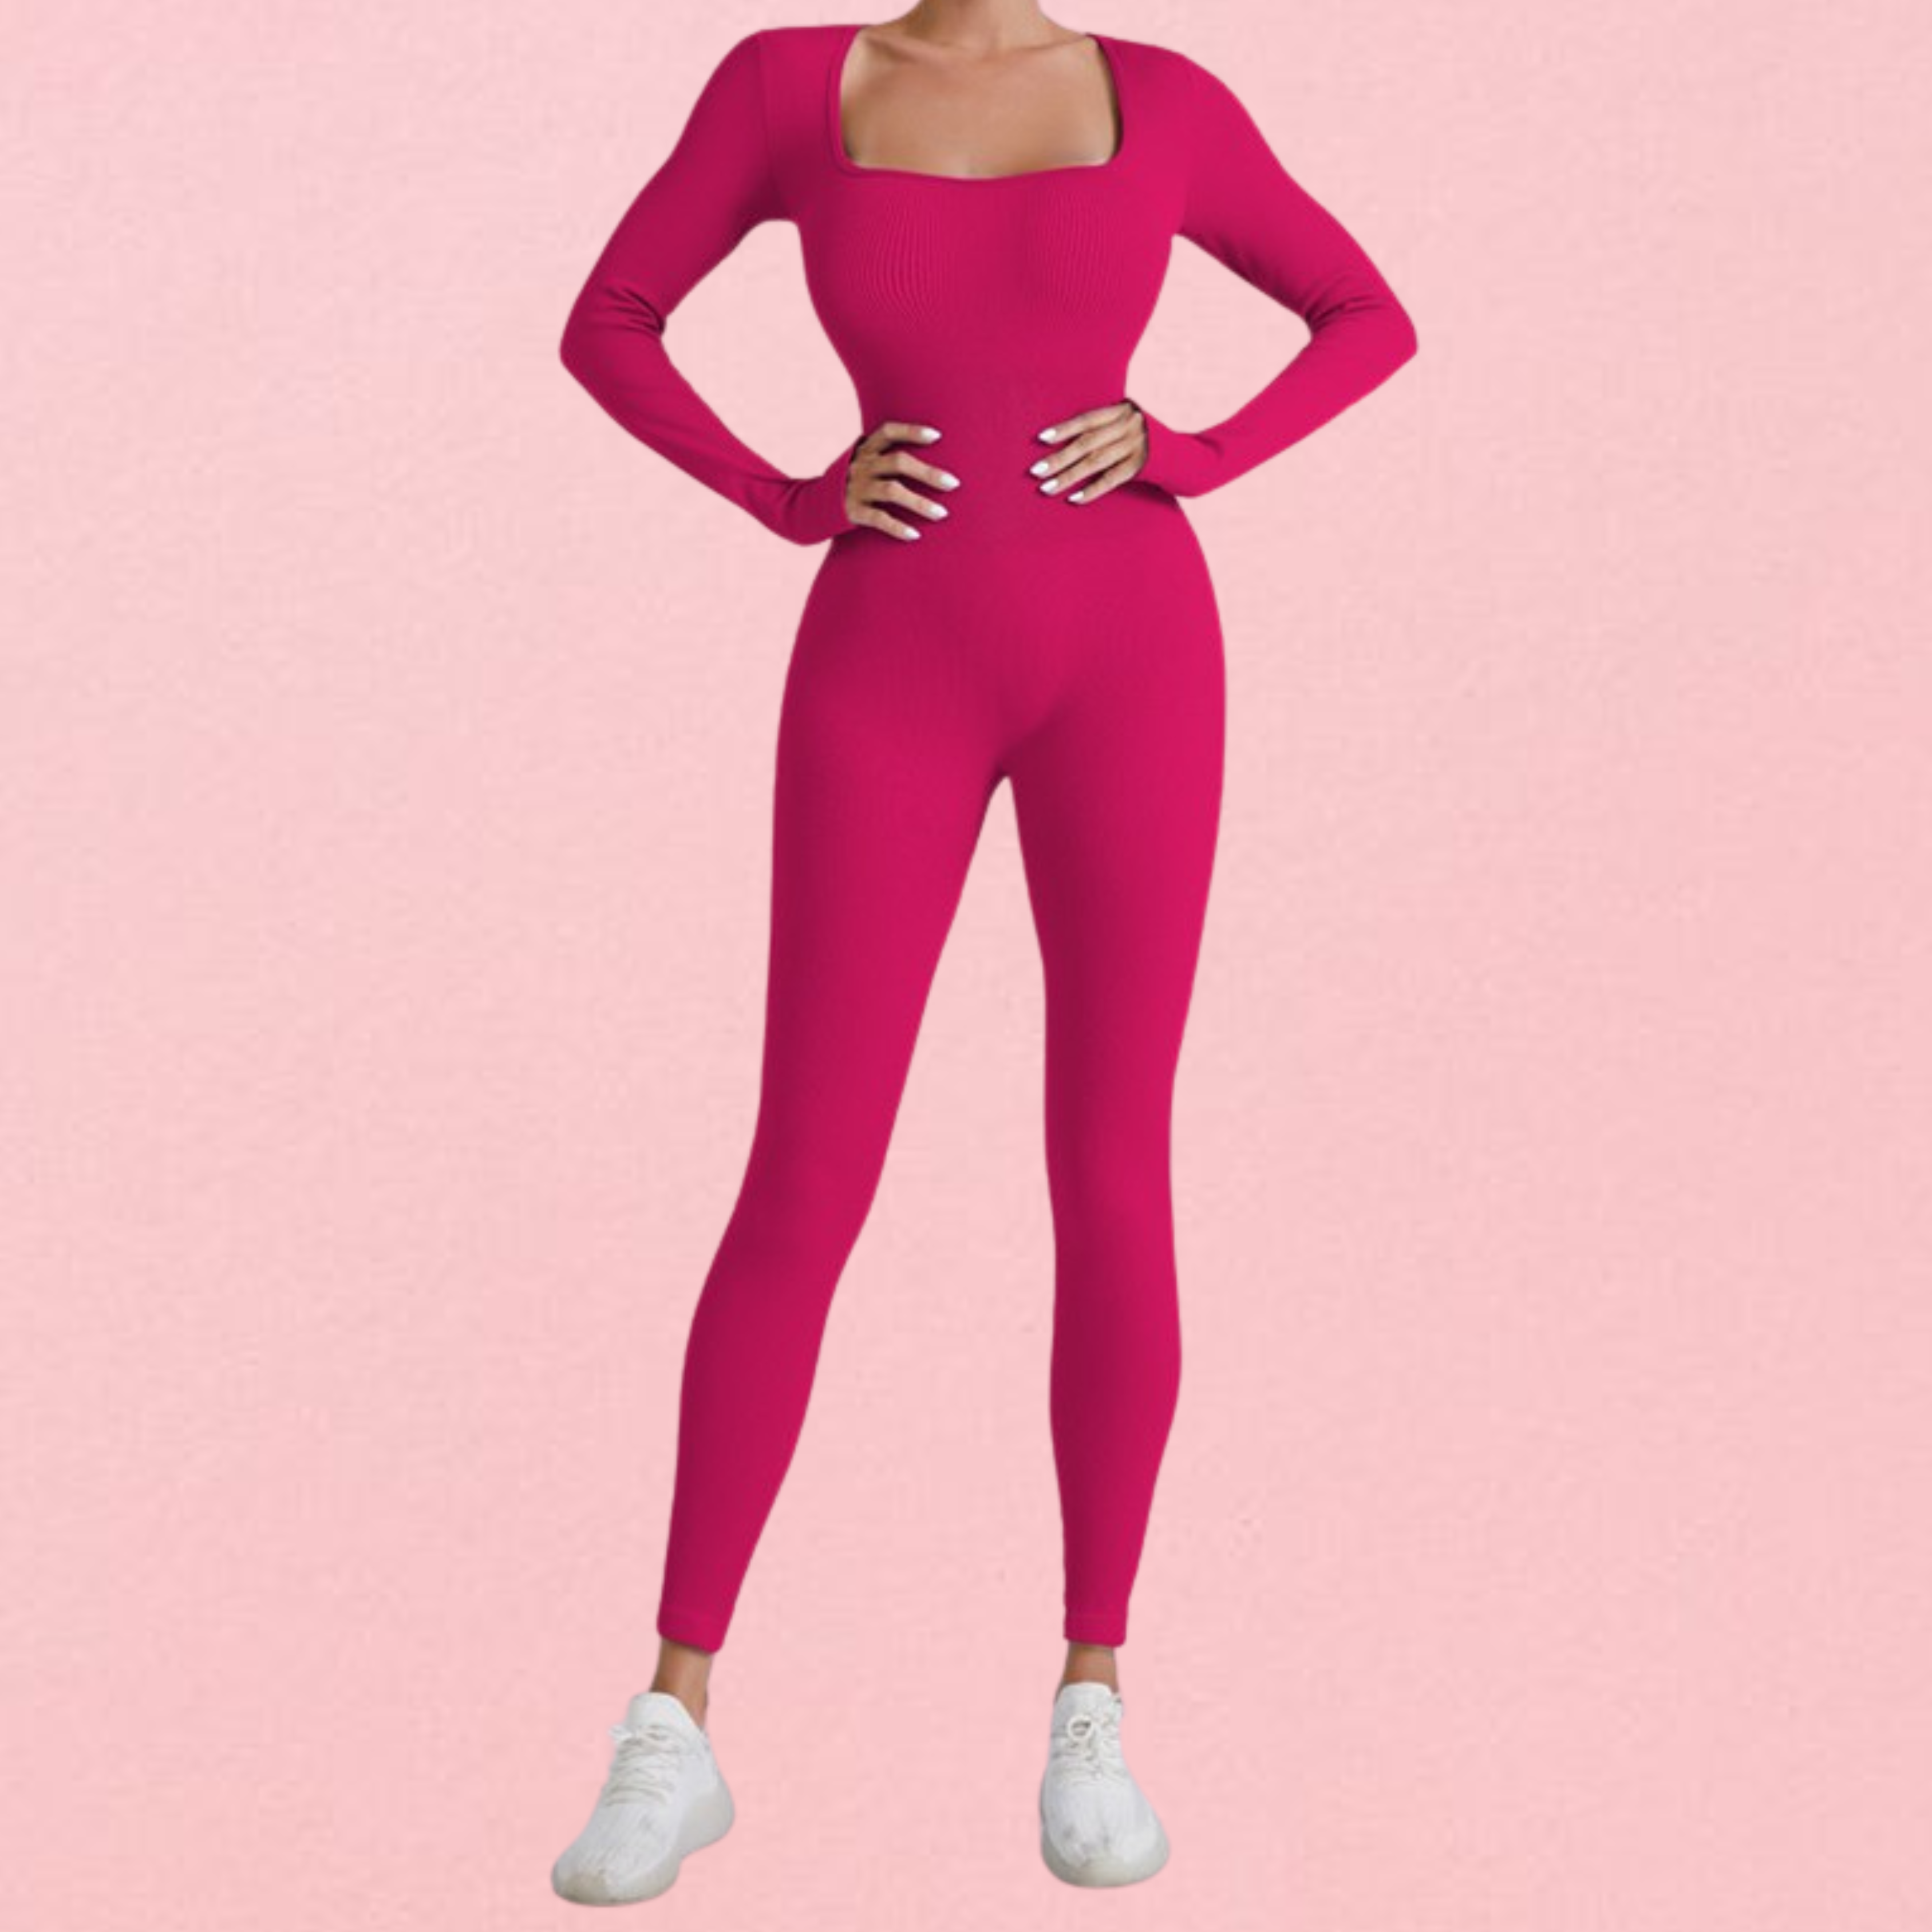 Snatch bodysuit in Pink